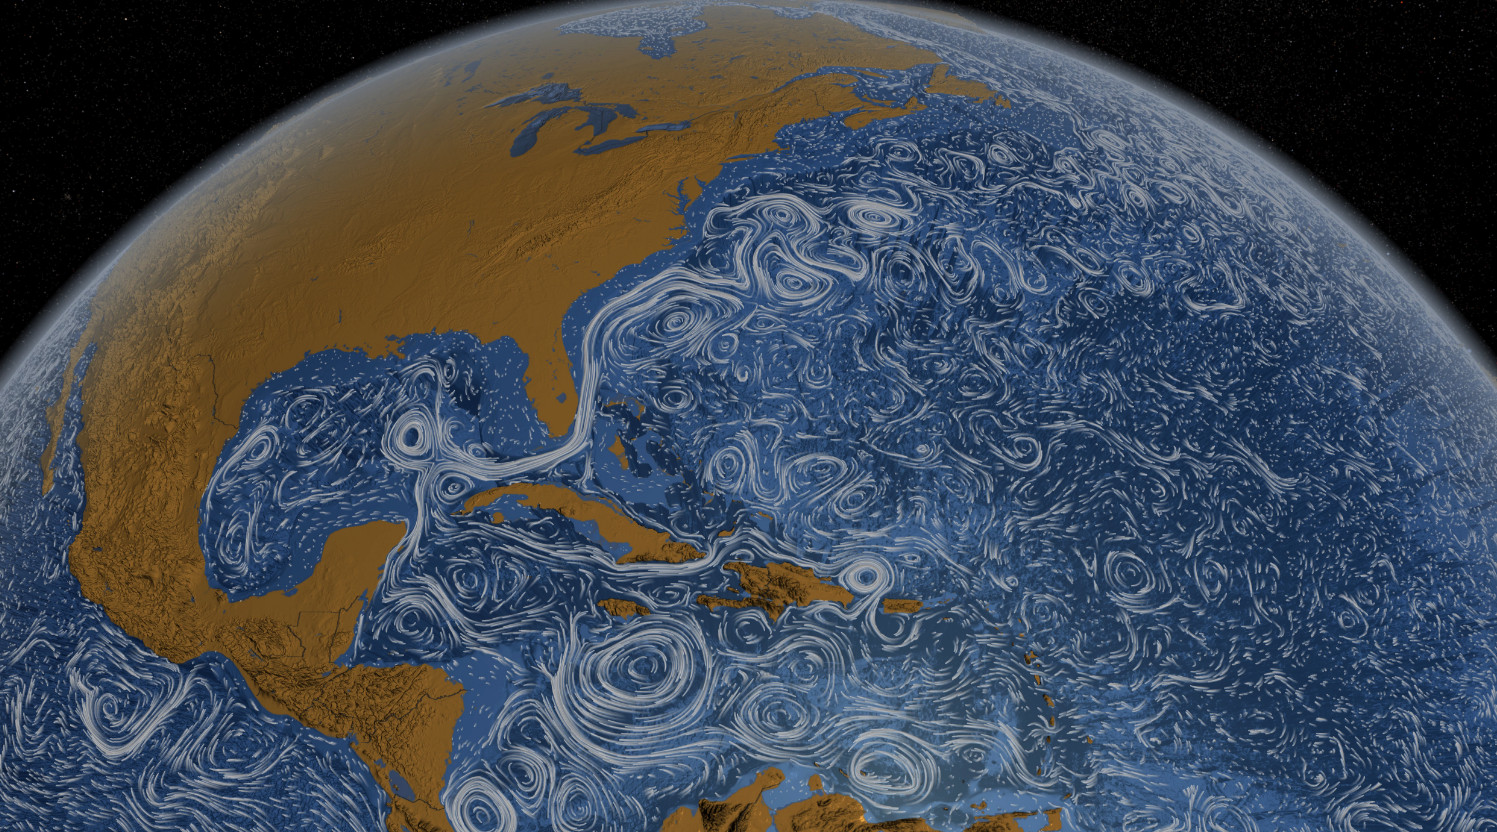 Hệ thống hải lưu Đại Tây Dương đang chảy chậm nhất trong vòng 1.600 năm qua